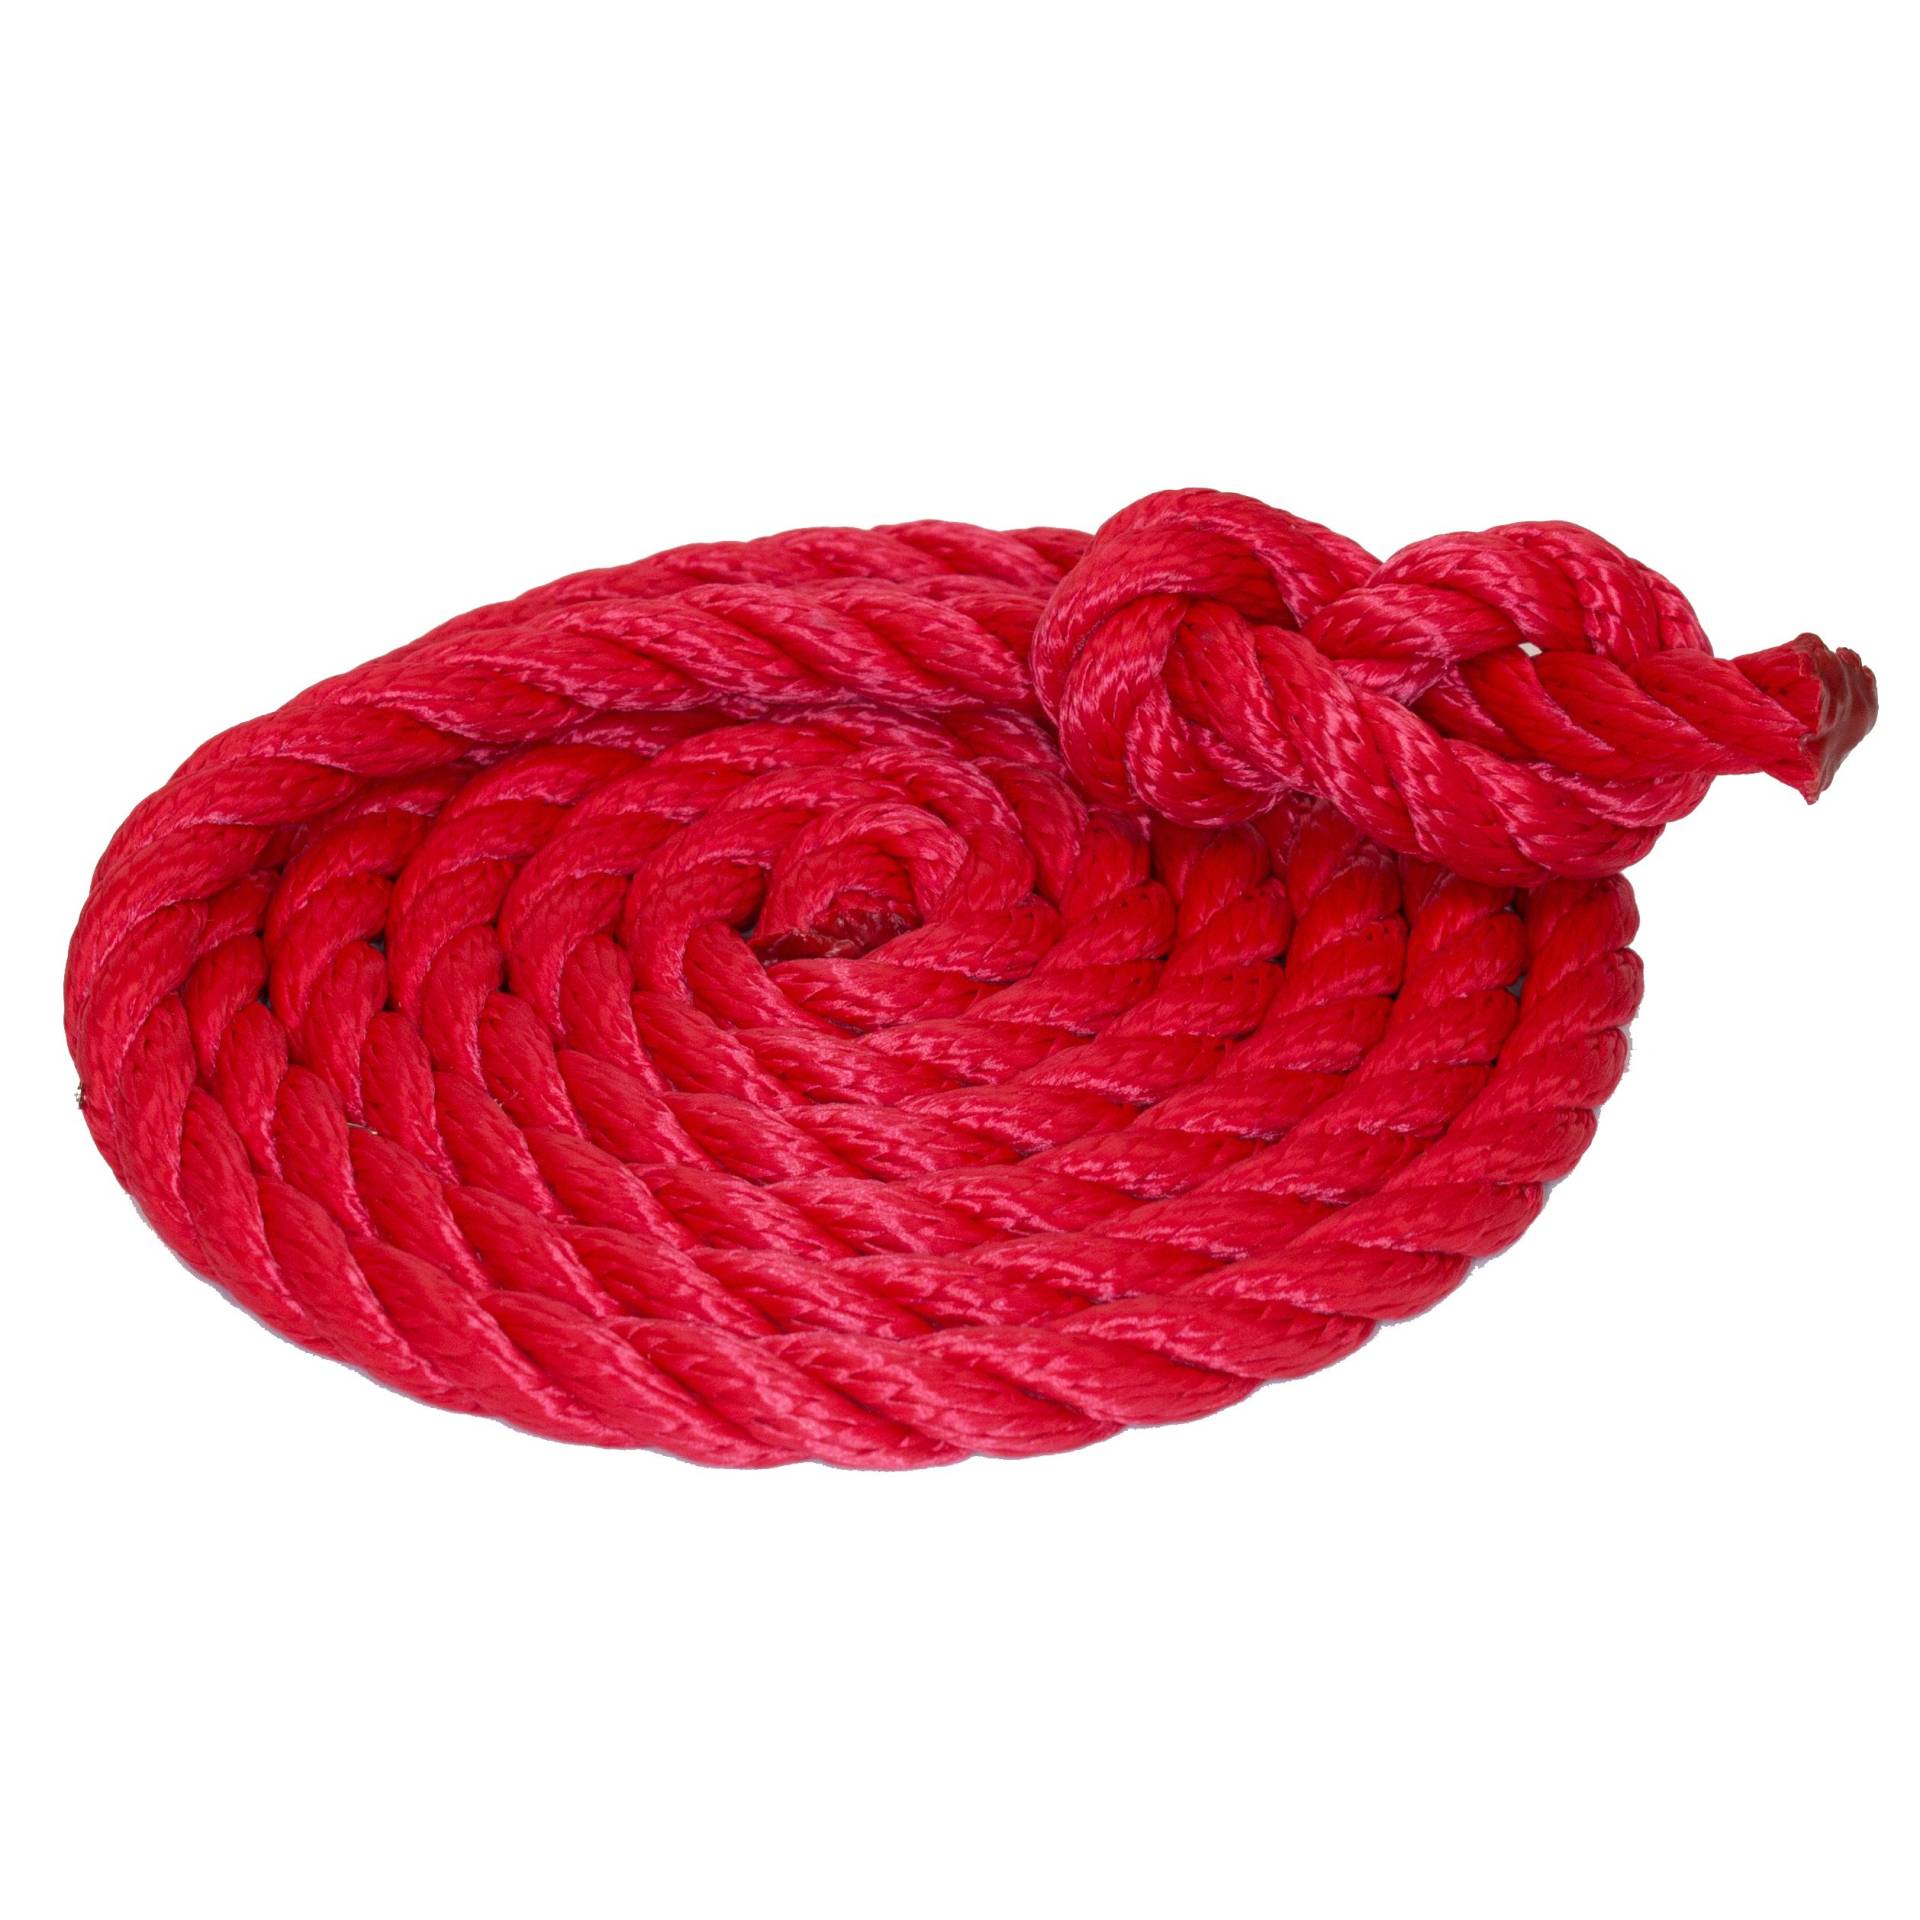 Tauwerk 12mm - Farbe: rot 3-litzig gedreht Leine Schnur Festmacher Rope Tau Seil Allzweckseil Reepschnur Lirolen-Tauwerk PP-Multifil, 3-schäftig gedreht (Länge 20mtr.) von HAMBURGER TAUWERK-FABRIK EST. 1901